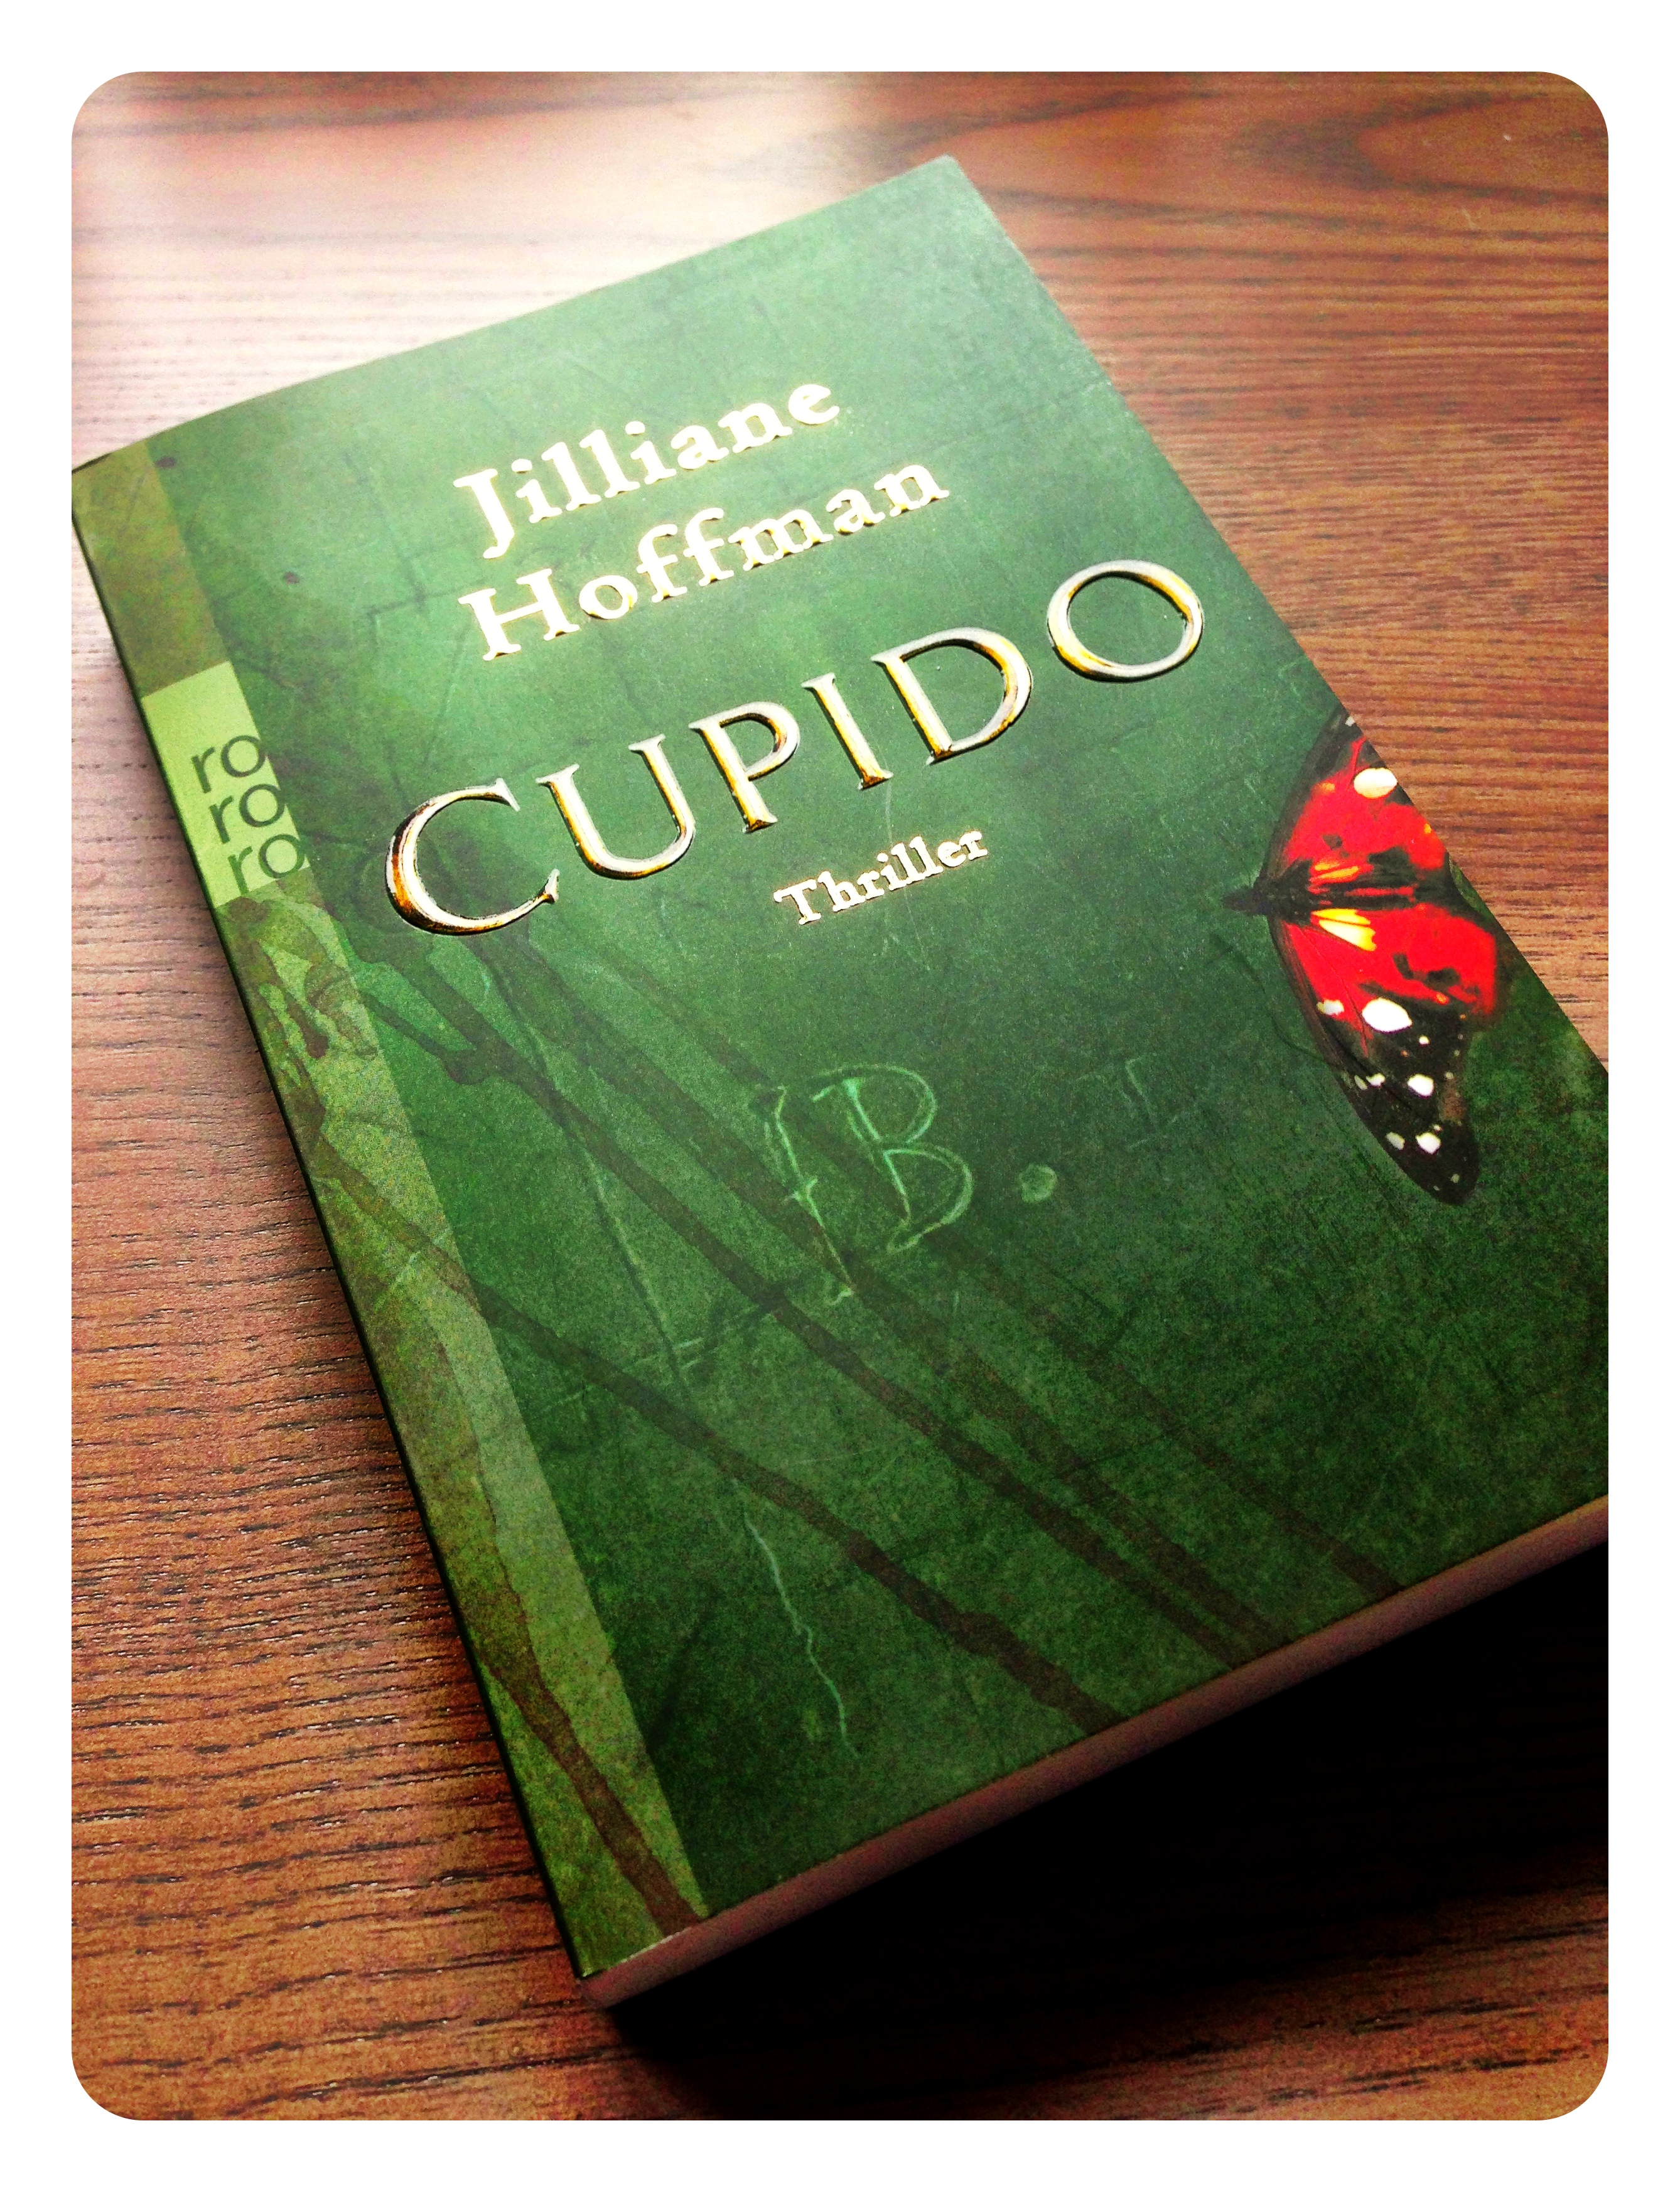 Foto des Buches "Cupido" von Jilliane Hoffman